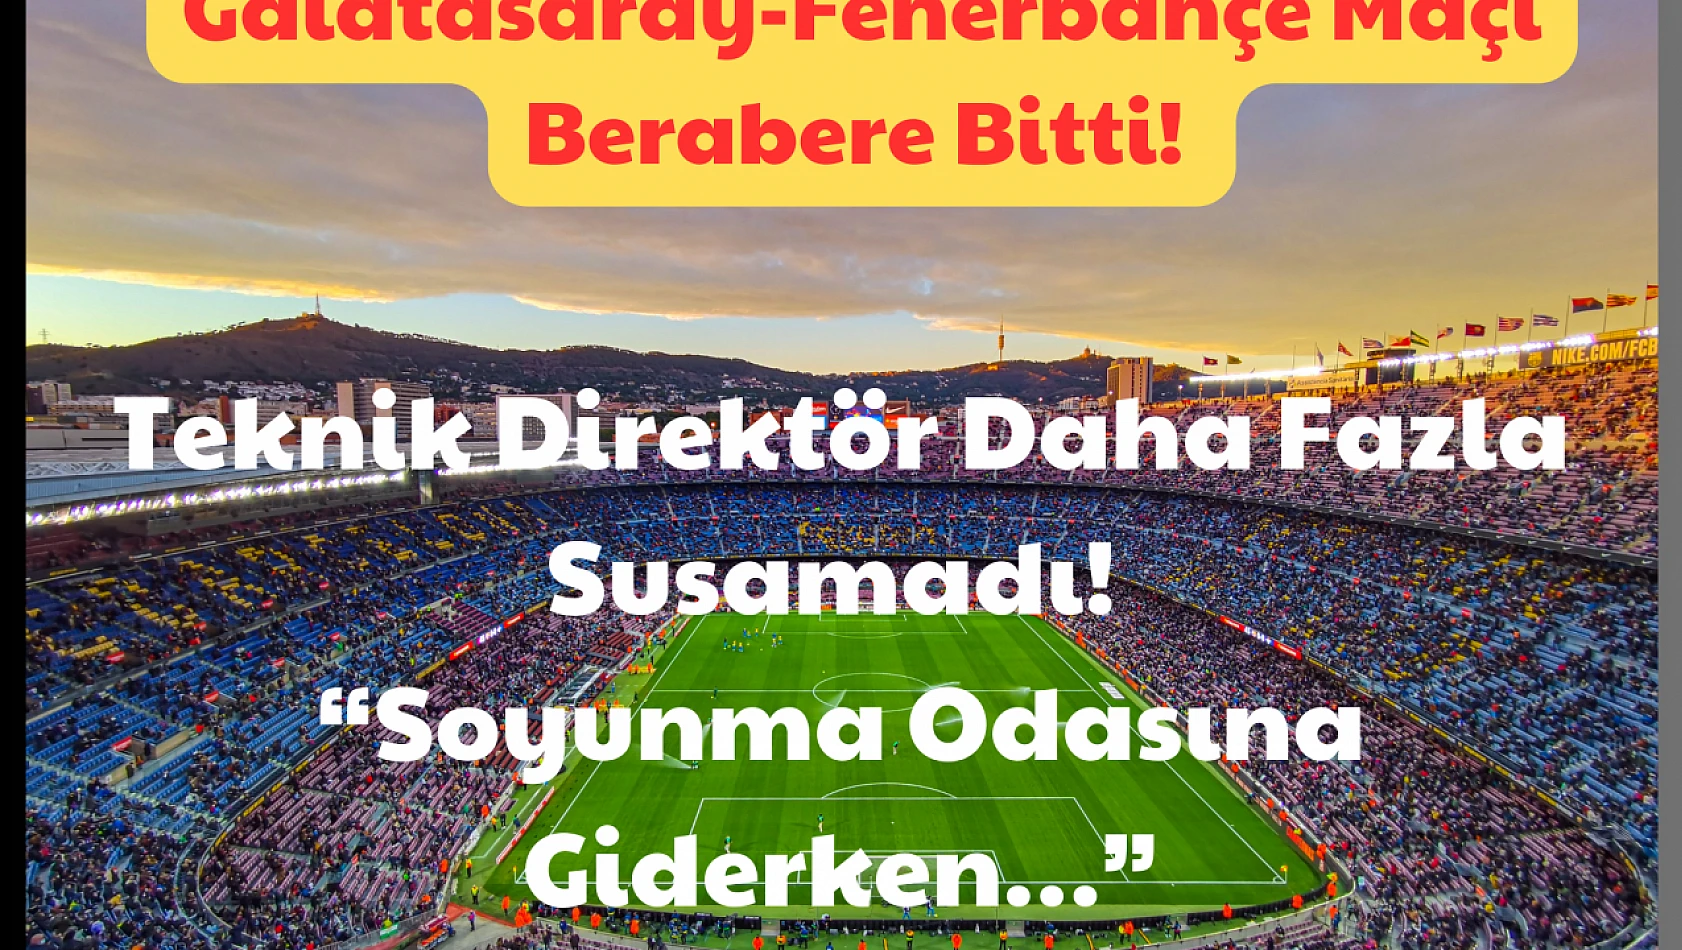 Galatasaray-Fenerbahçe Maçı Berabere Bitti: Teknik Direktör Daha Fazla Susamadı! 'Soyunma Odasına Giderken…'